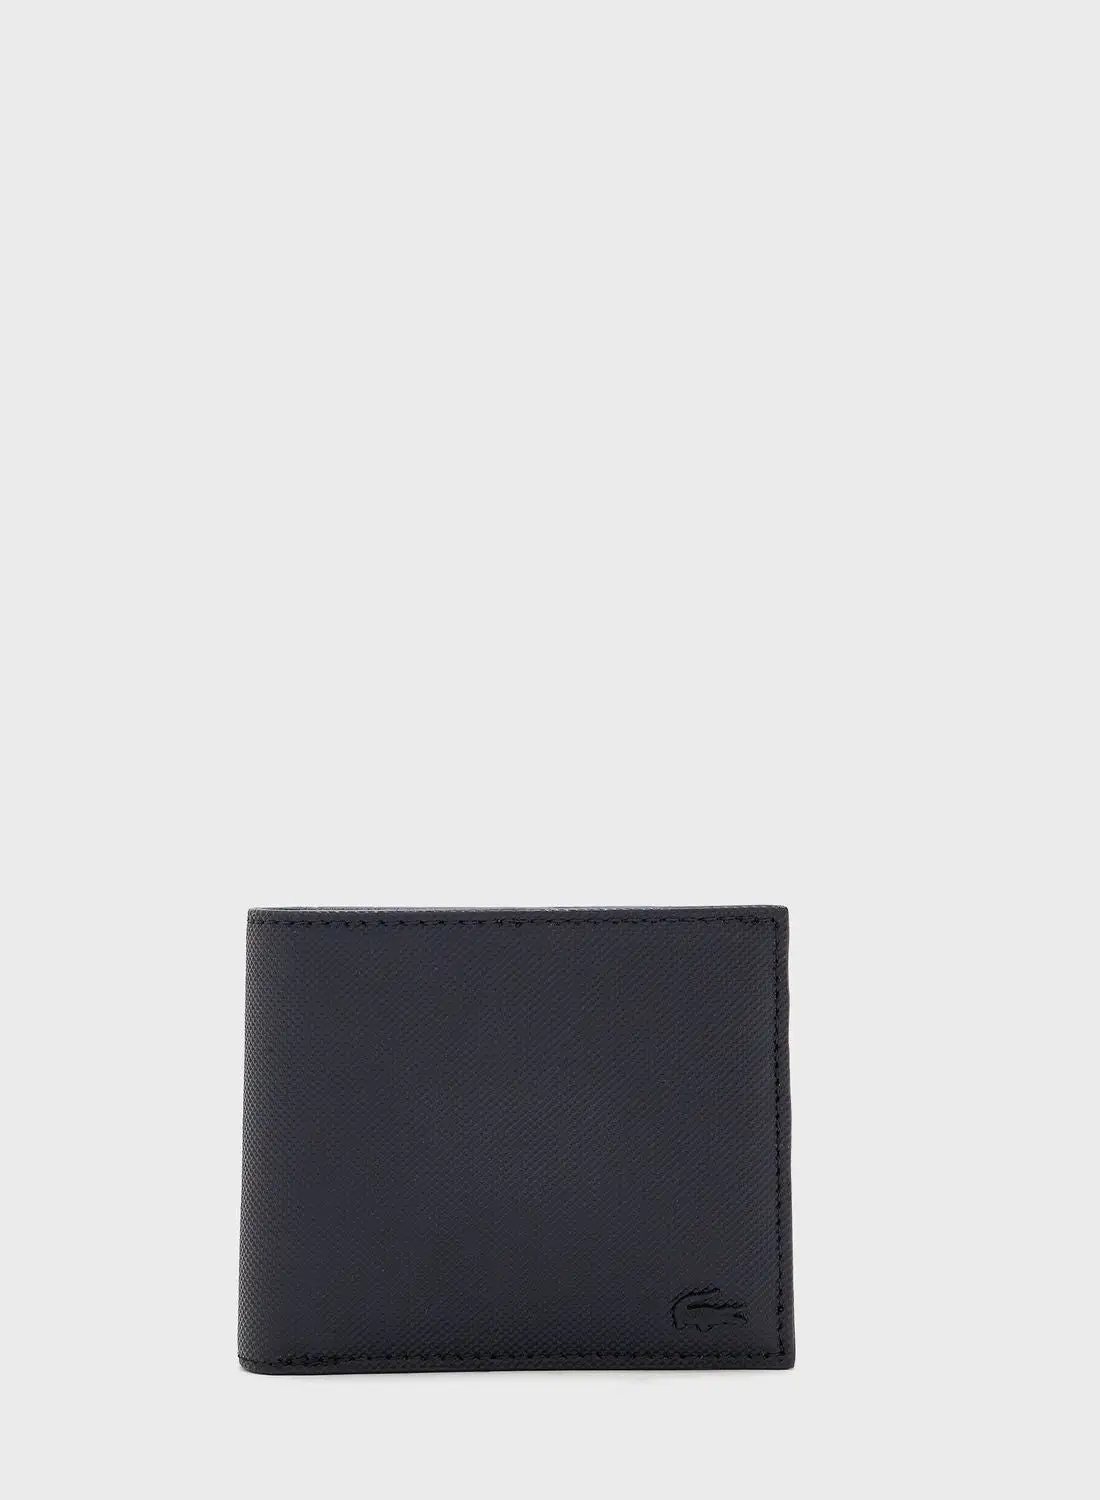 محفظة ثنائية الطي تحمل شعار DUCHINI